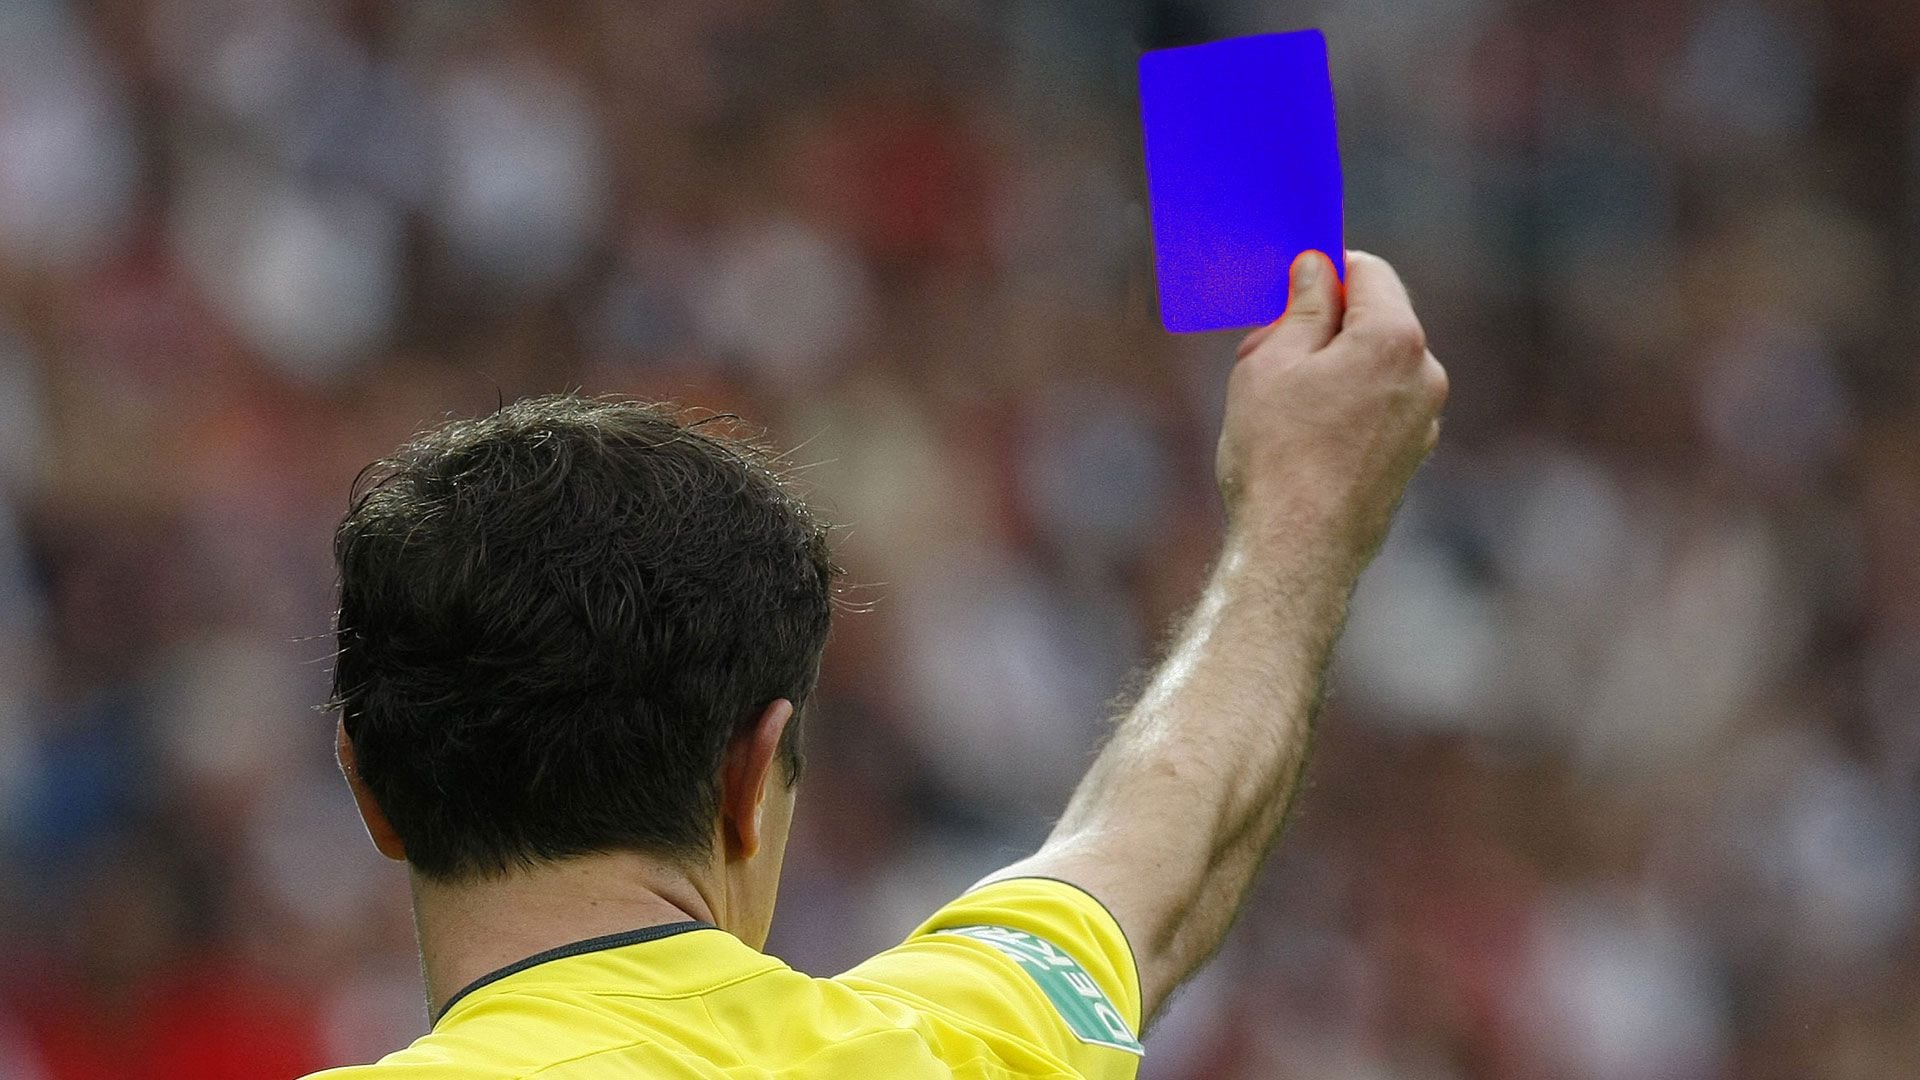 tarjeta azul arbitro